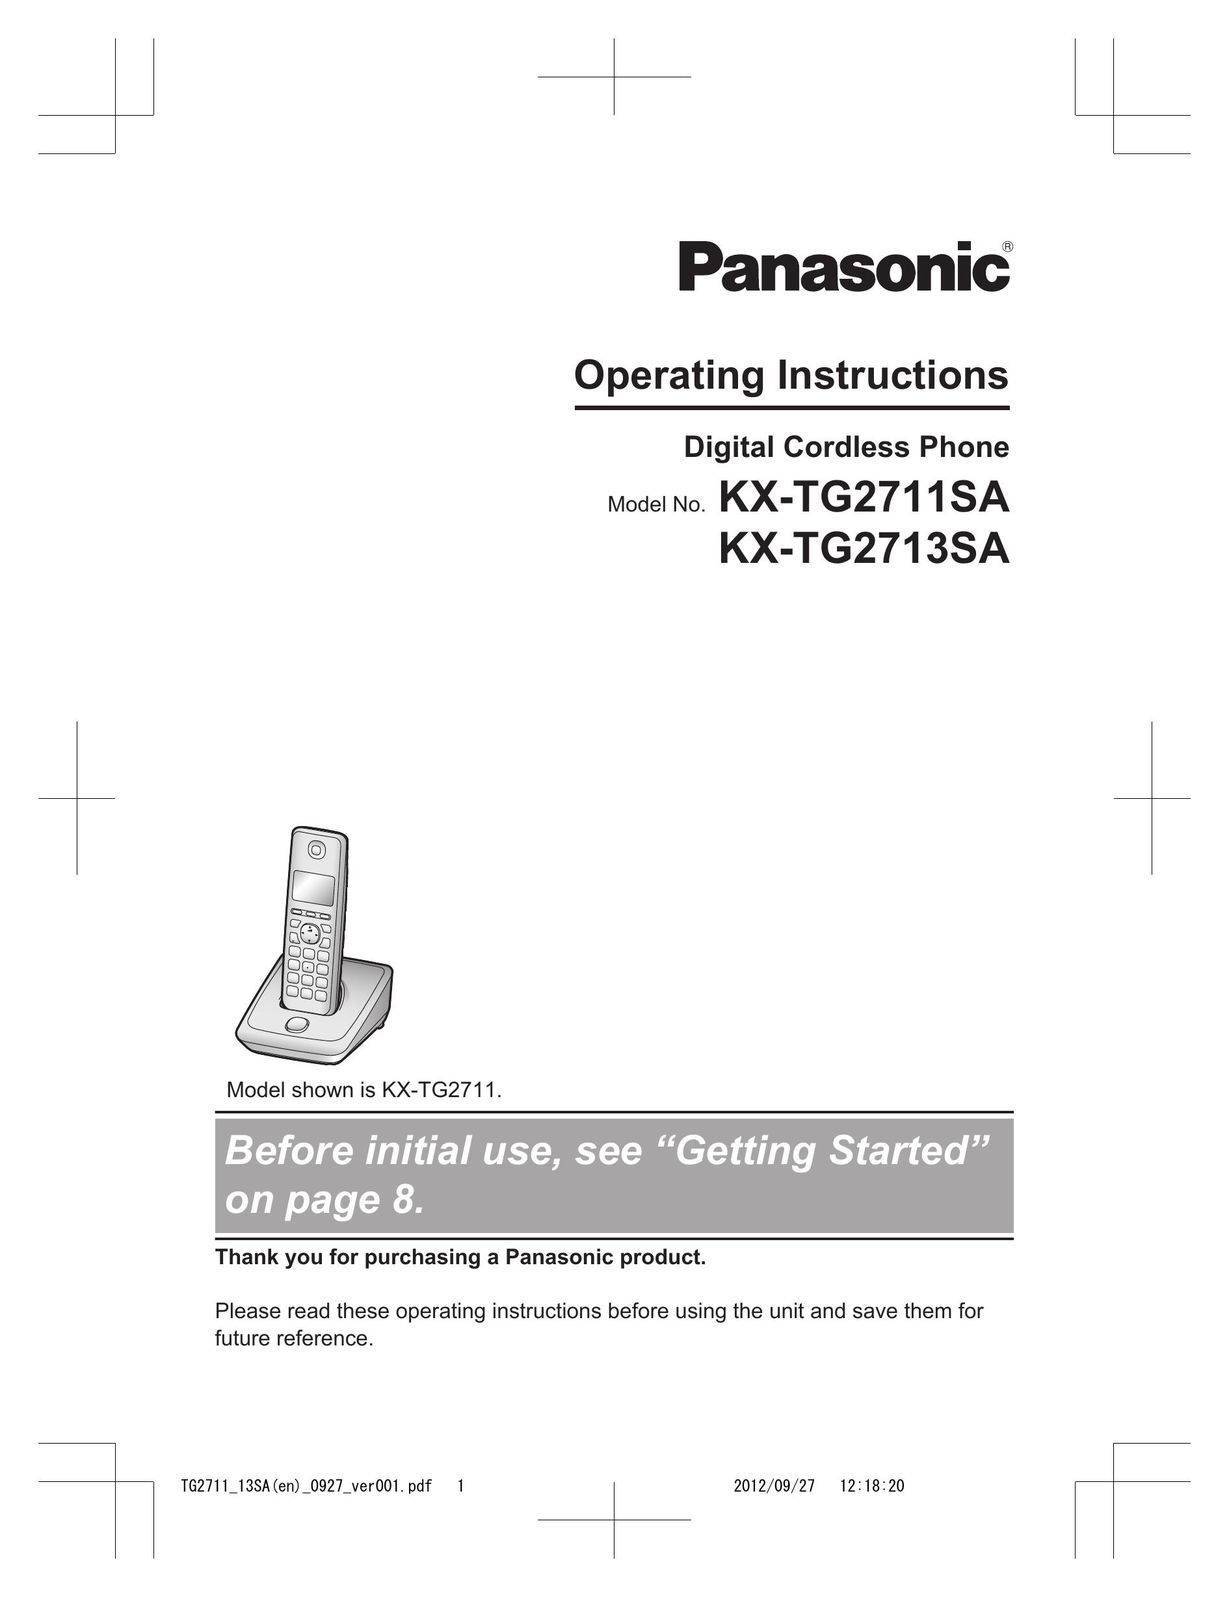 Panasonic KX-TG2711 Cordless Telephone User Manual